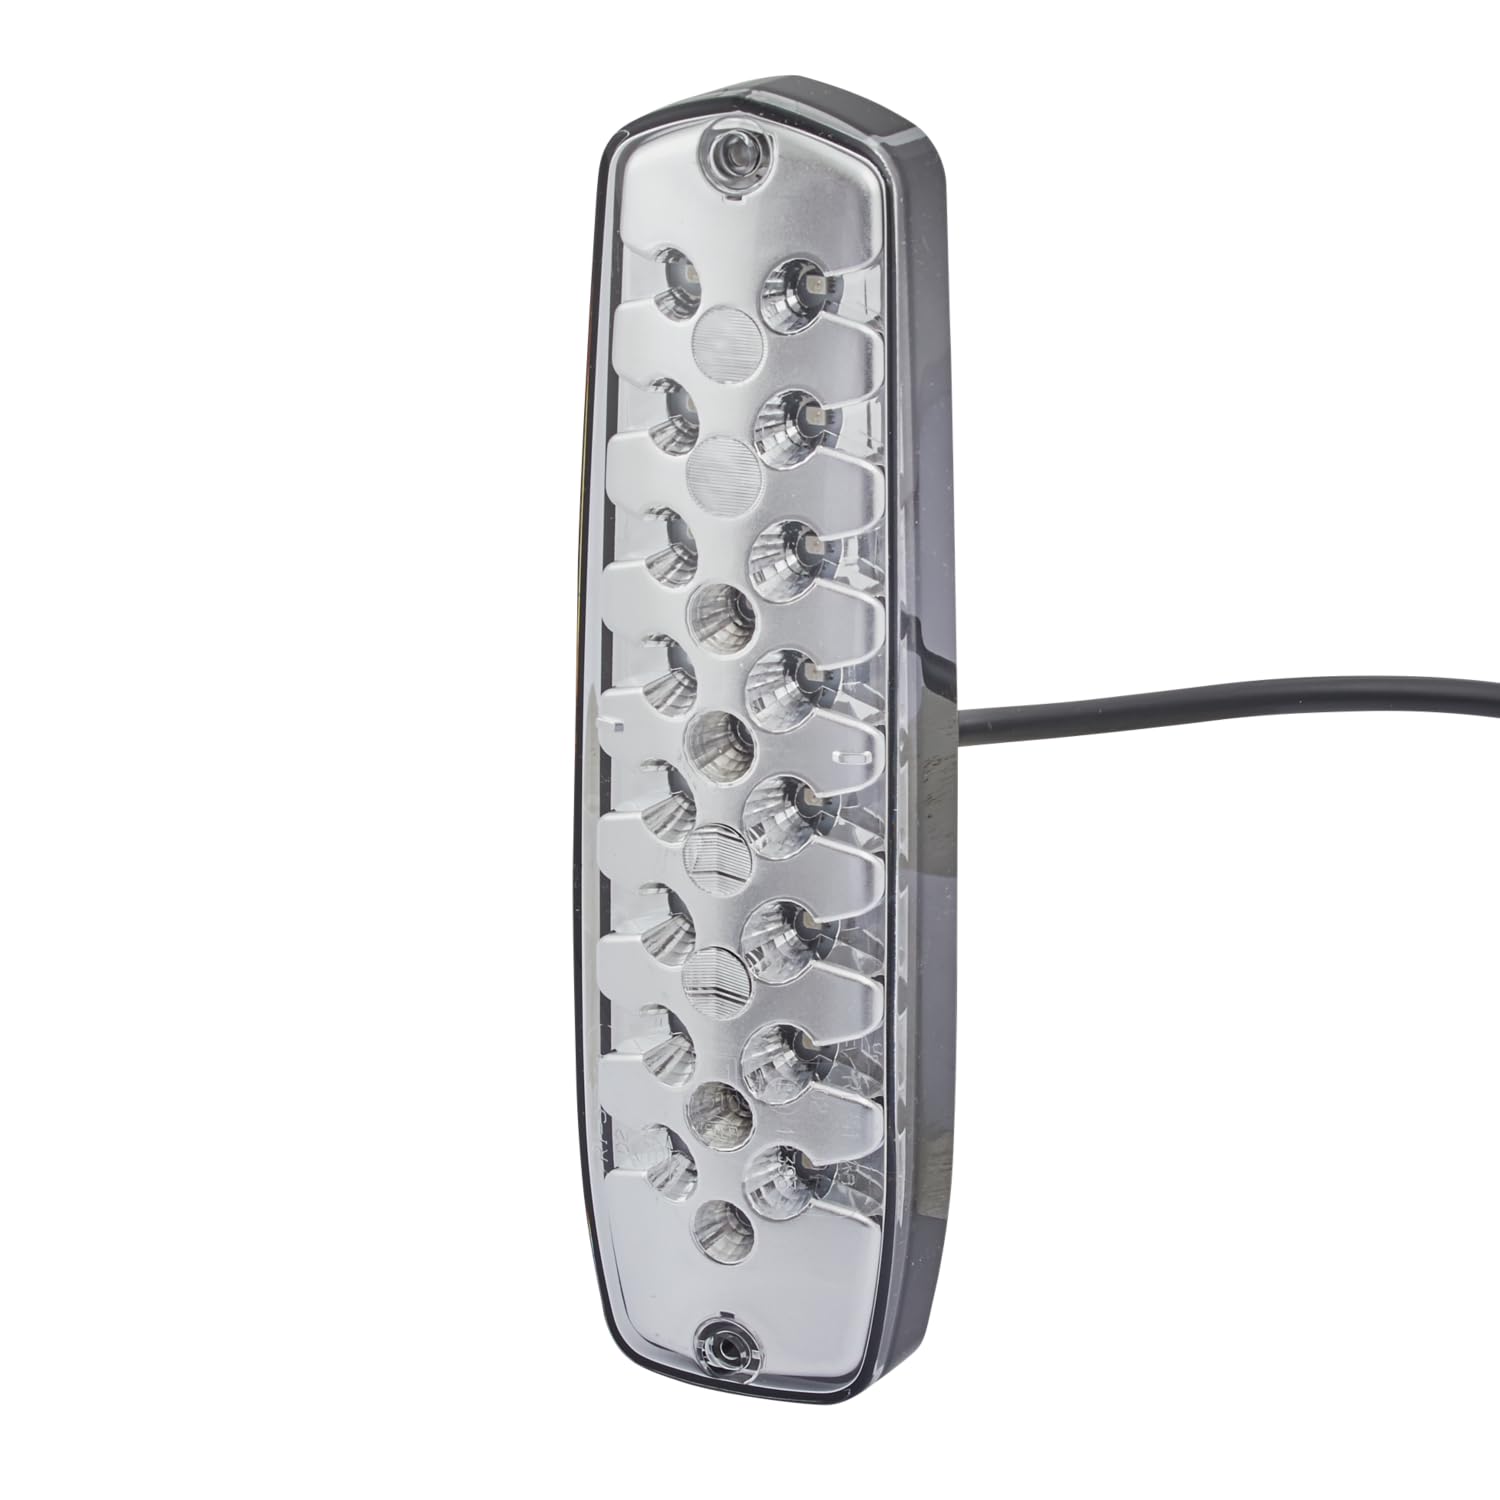 HELLA Rückleuchte - Lean LED - Anhänger Beleuchtung - LED - 24V / 12V - Anbau/geschraubt - ECE/nicht SAE - Lichtscheibenfarbe: glasklar - Kabel: 500mm - rechts/links - 2SD 343 910-001 von Hella